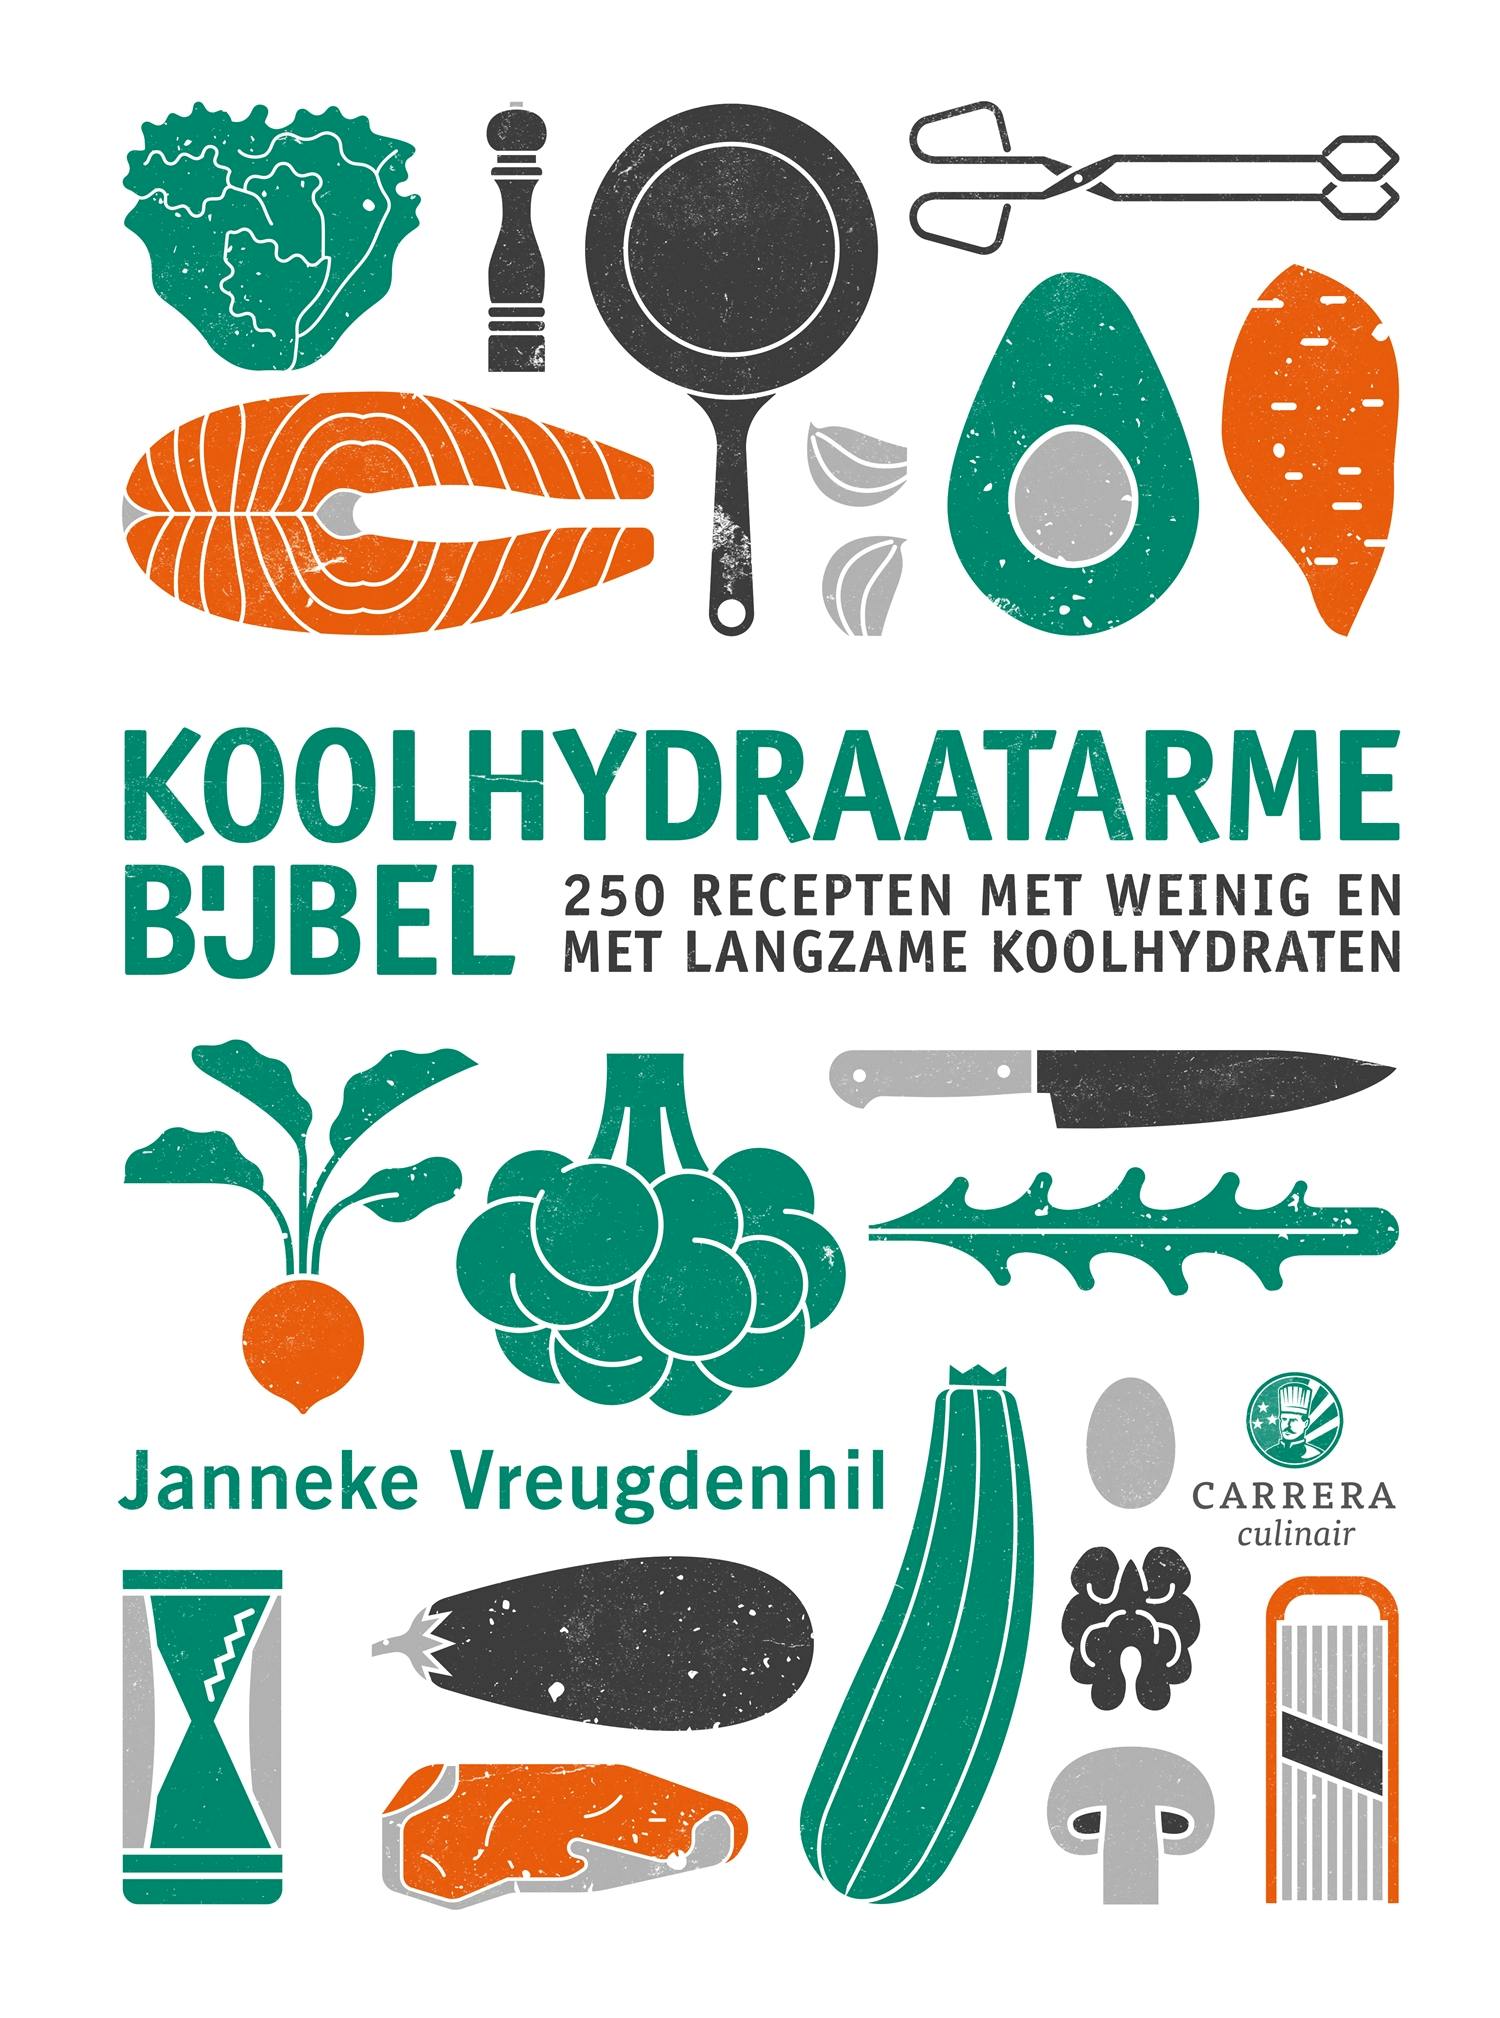 Koolhydraatarme bijbel: 250 recepten met weinig en langzame koolhydraten - Janneke Vreugdenhil